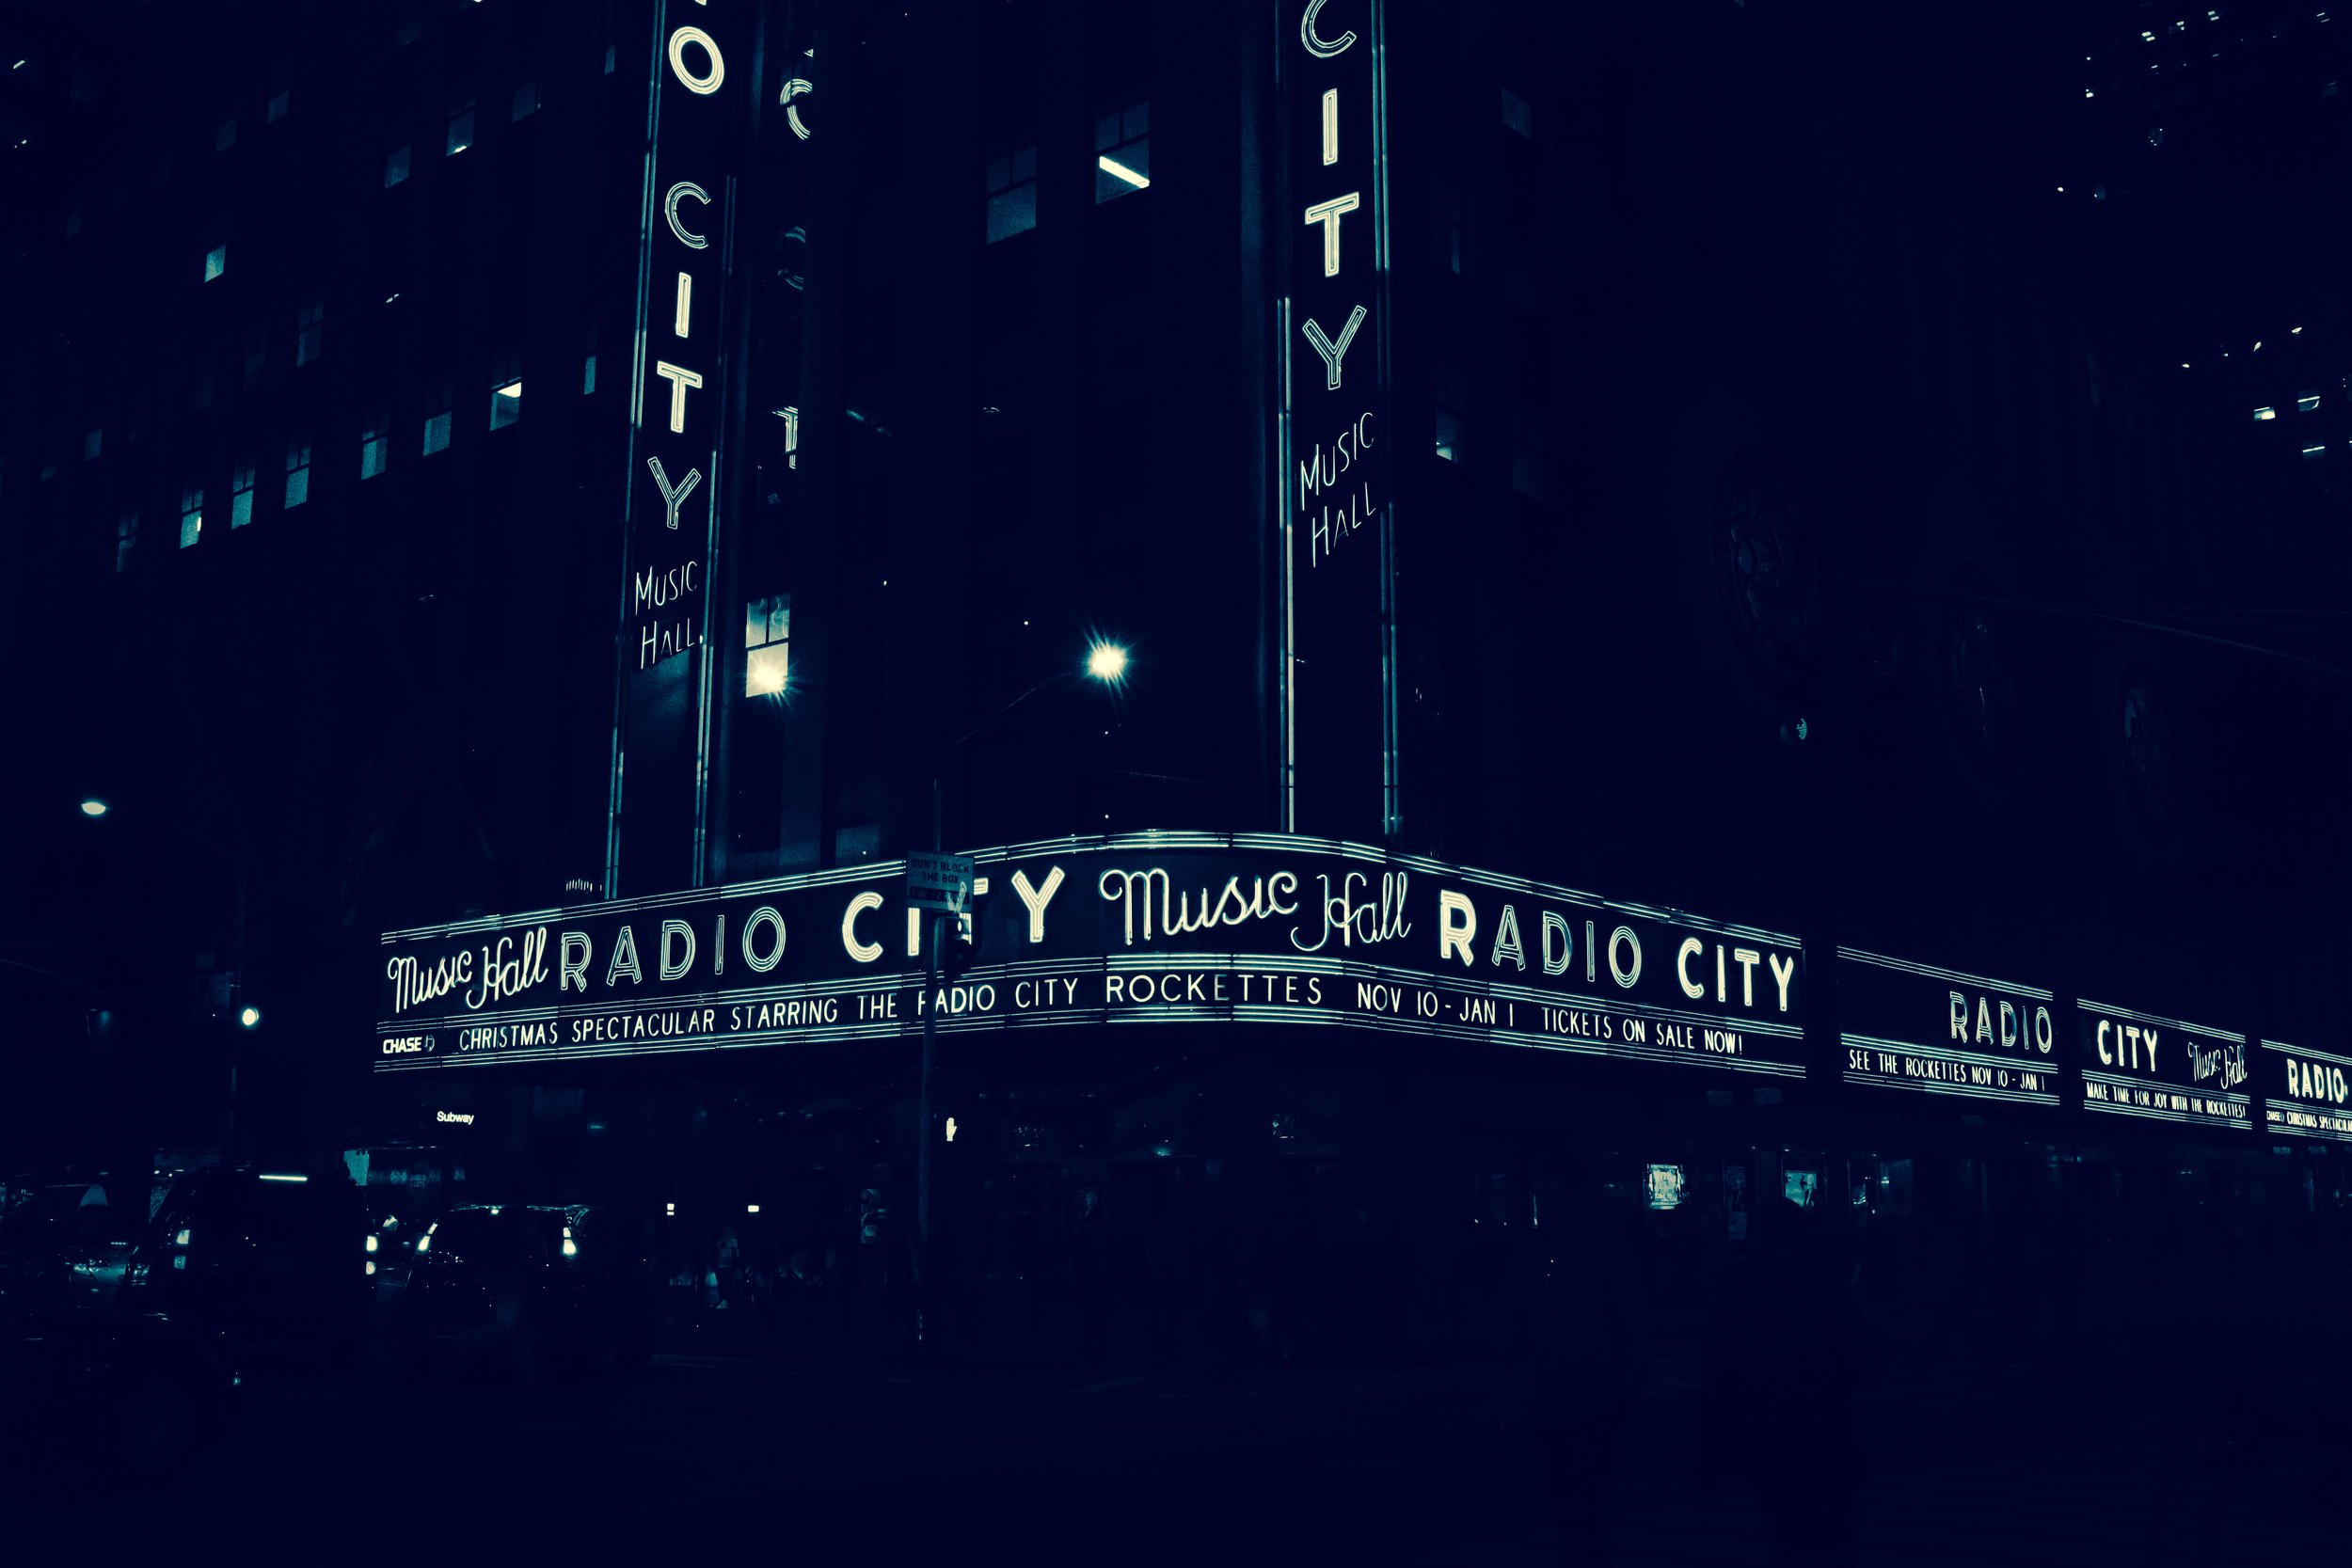 Benamoz Radio City Music Hall (1 of 1).JPG